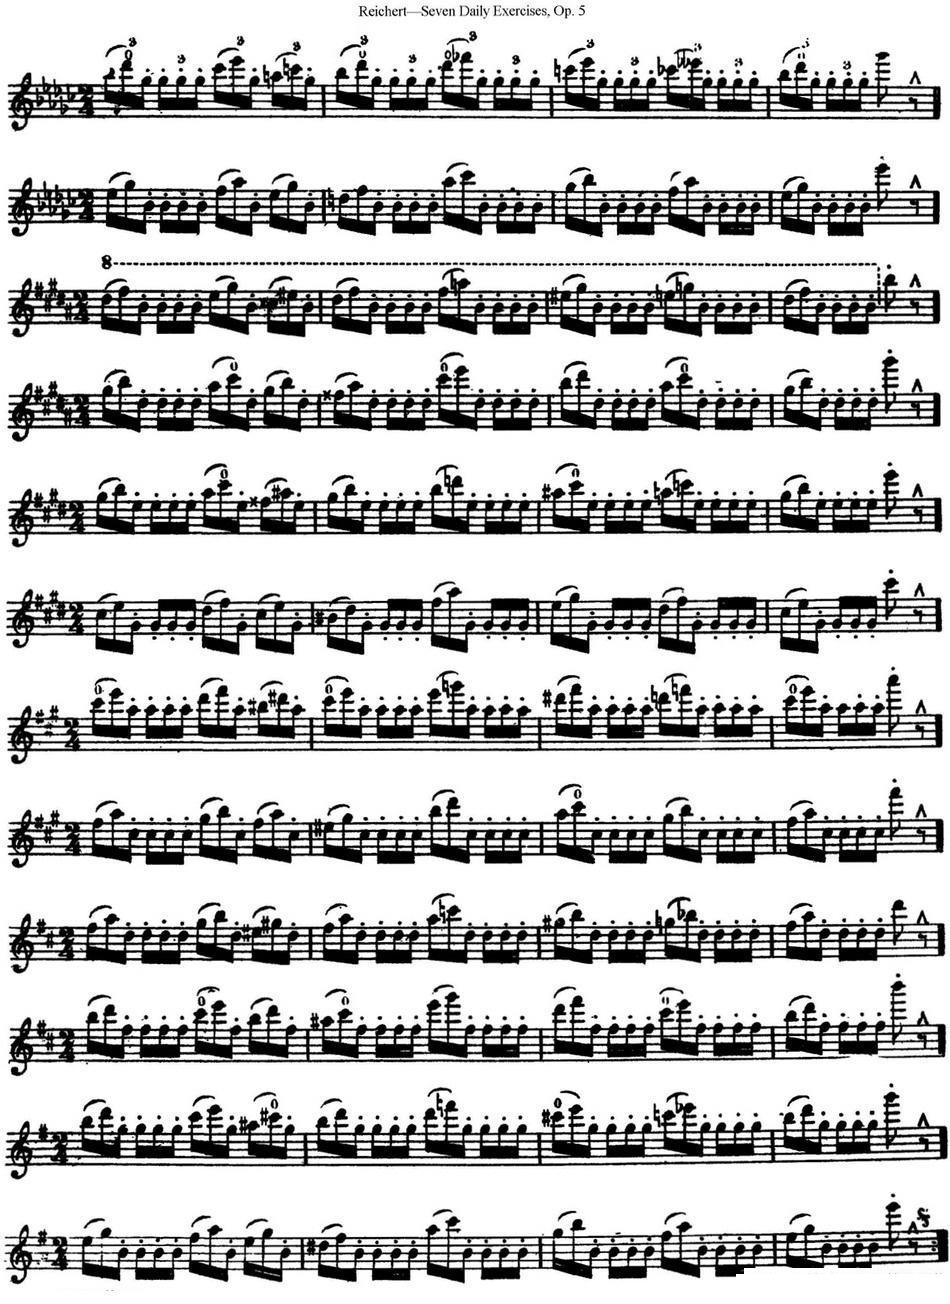 《瑞澈特七首每日长笛练习曲Op.5》长笛谱